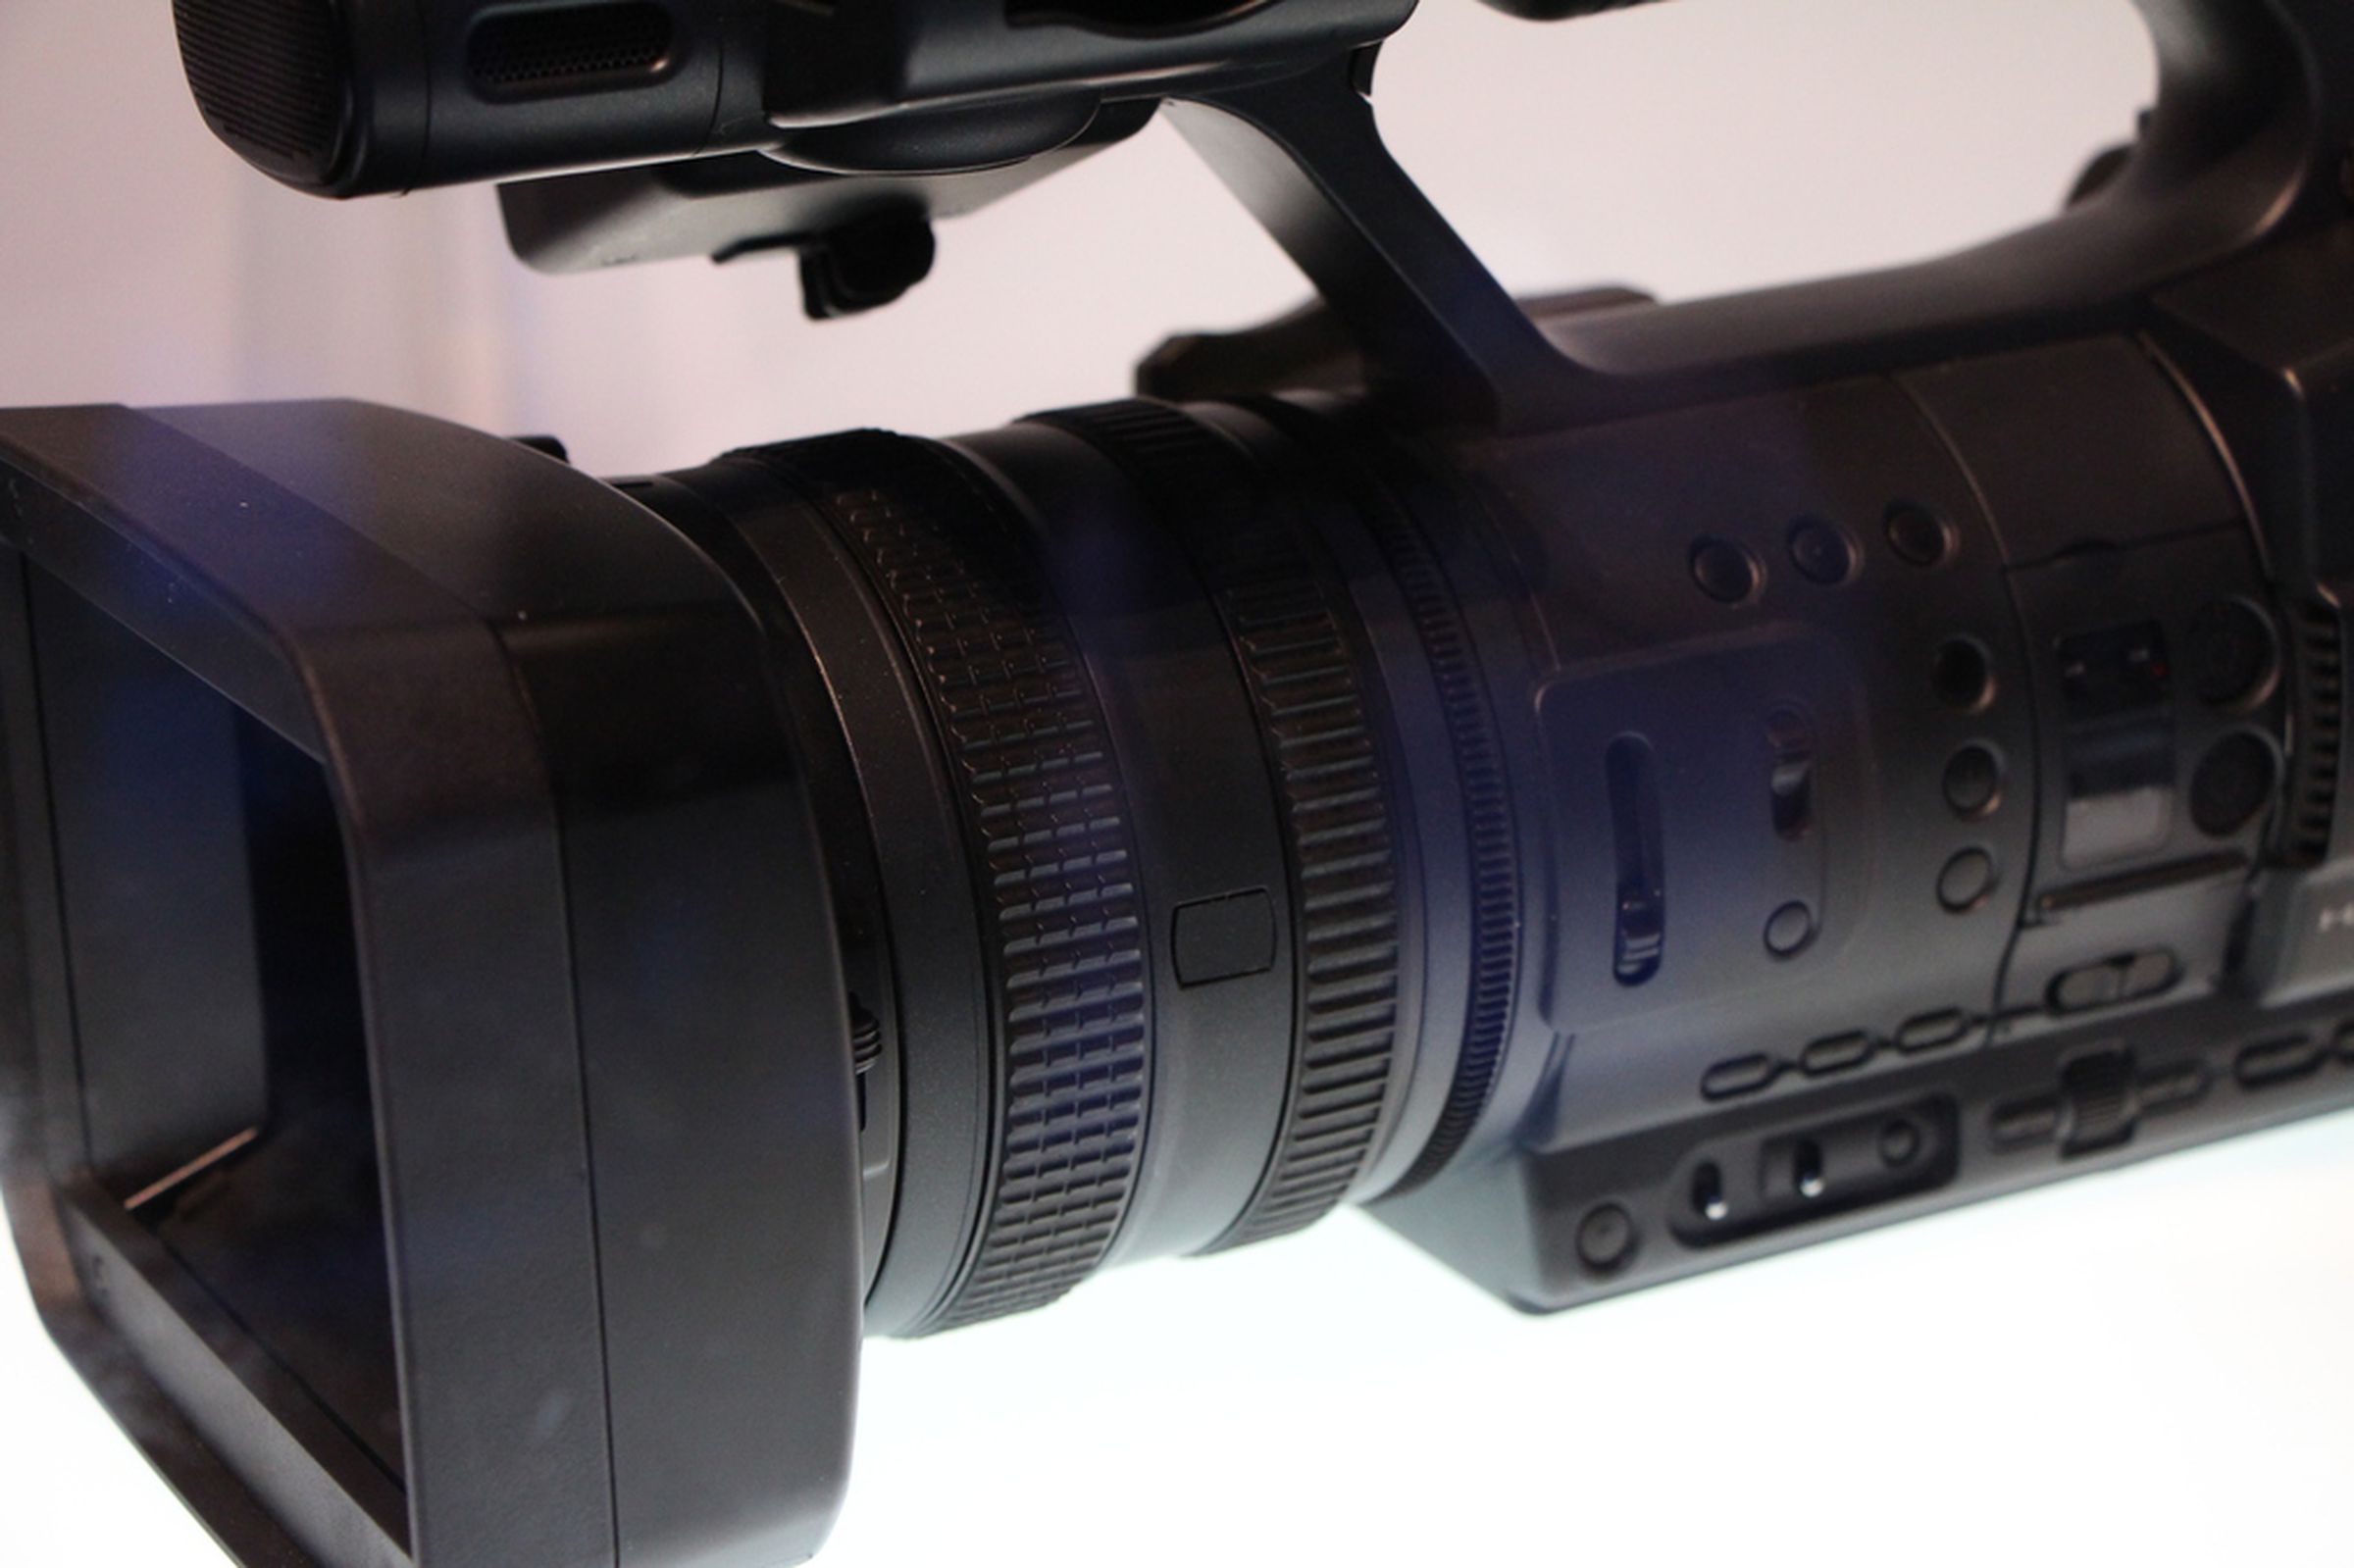 Sony's 4K Handycam prototype photos